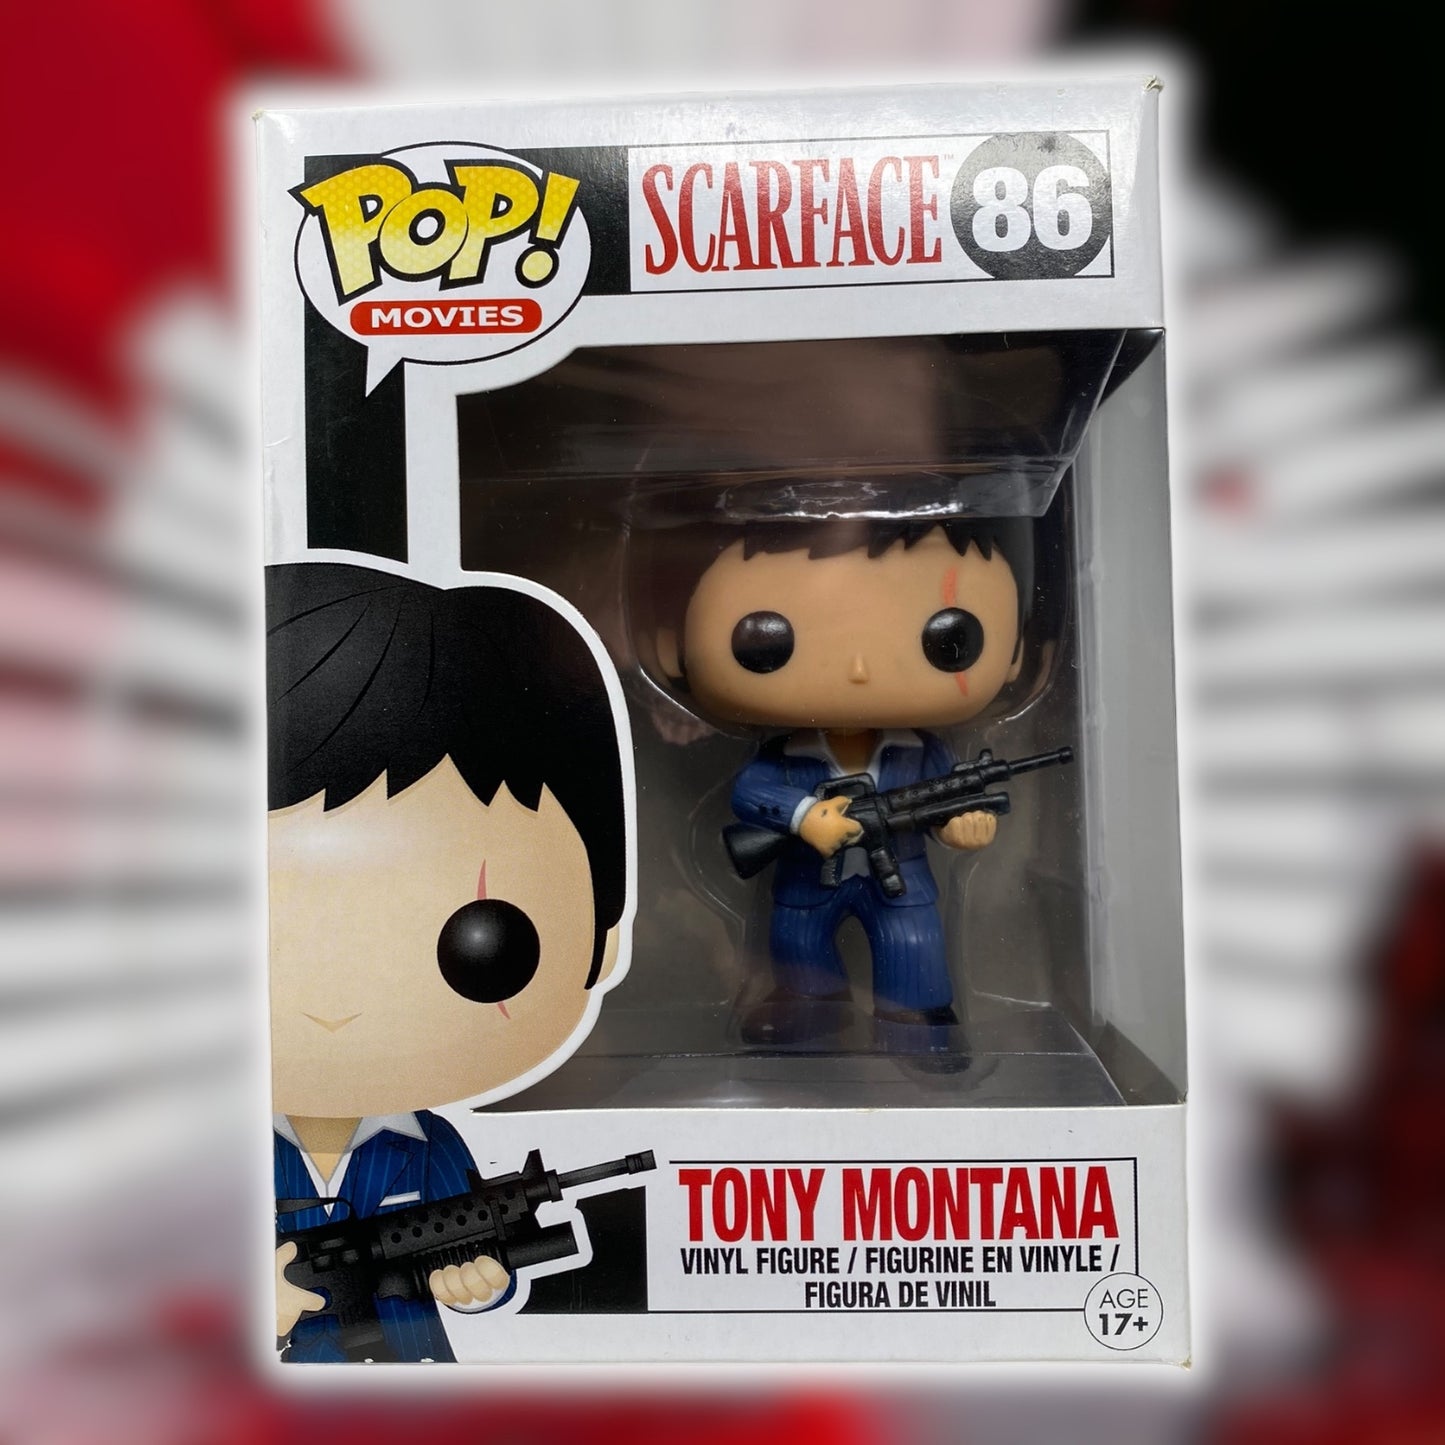 SOLD - 2013 - Tony Montana 86